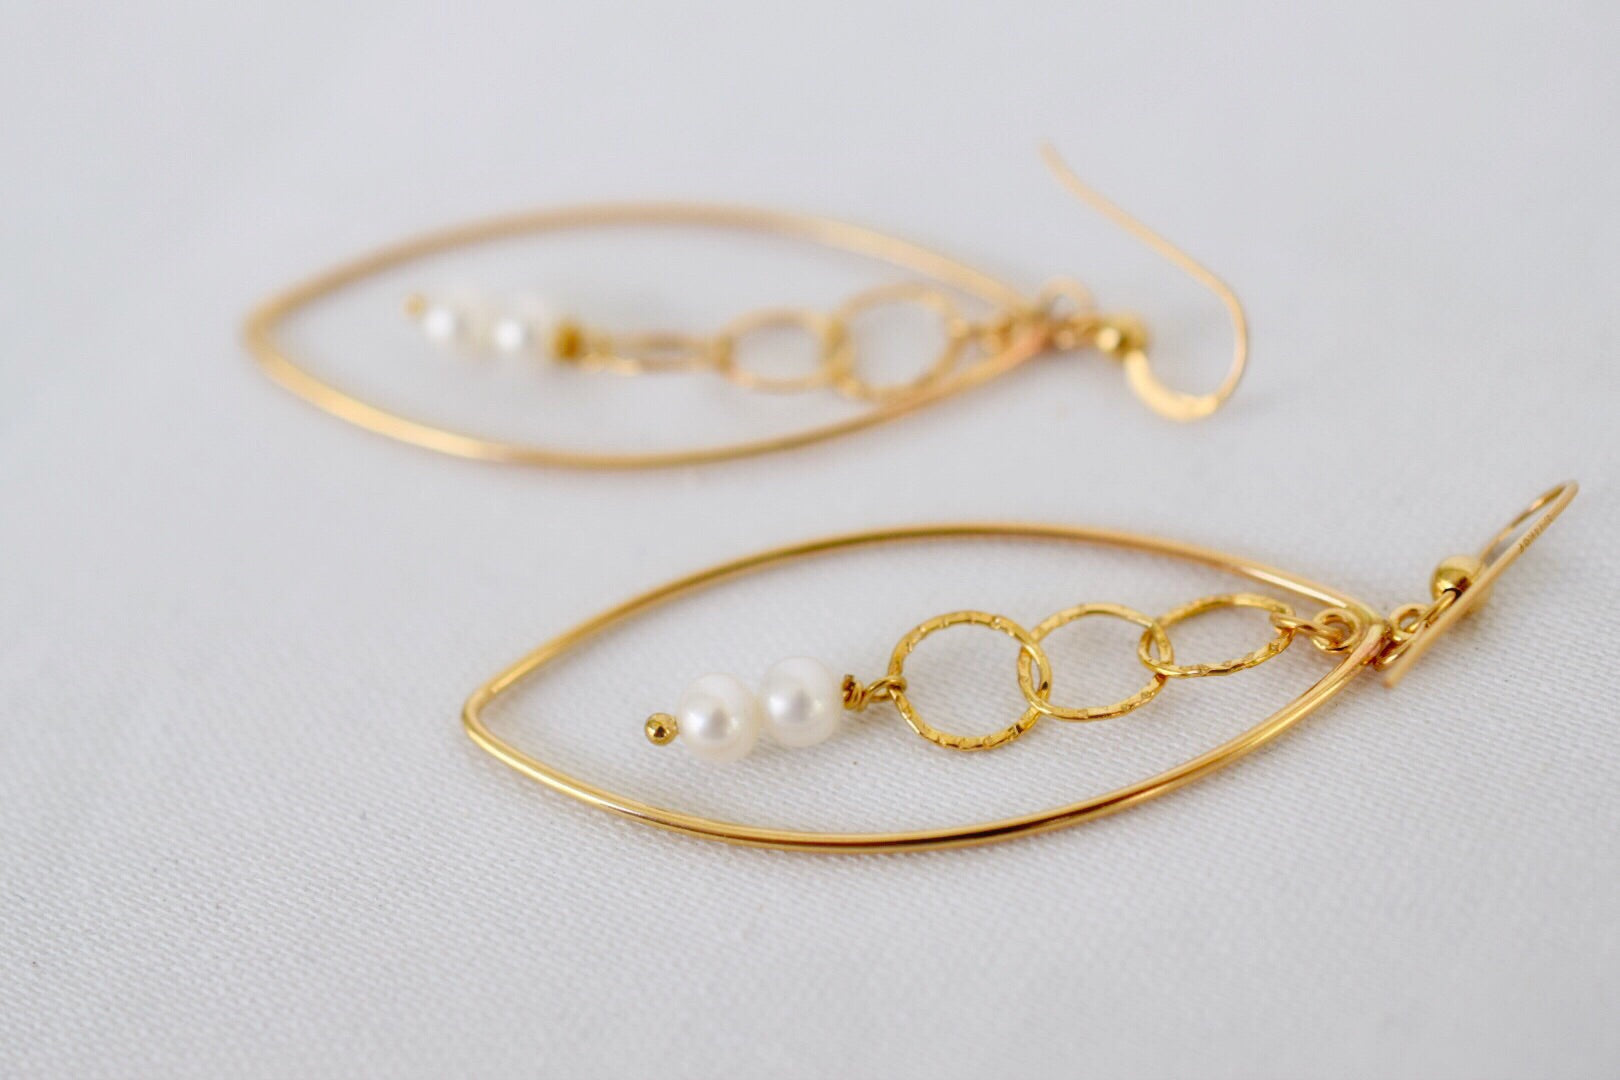 Pretty Lights - 14k GF earrings with 4mm pearls - MILK VELVET PEARLS